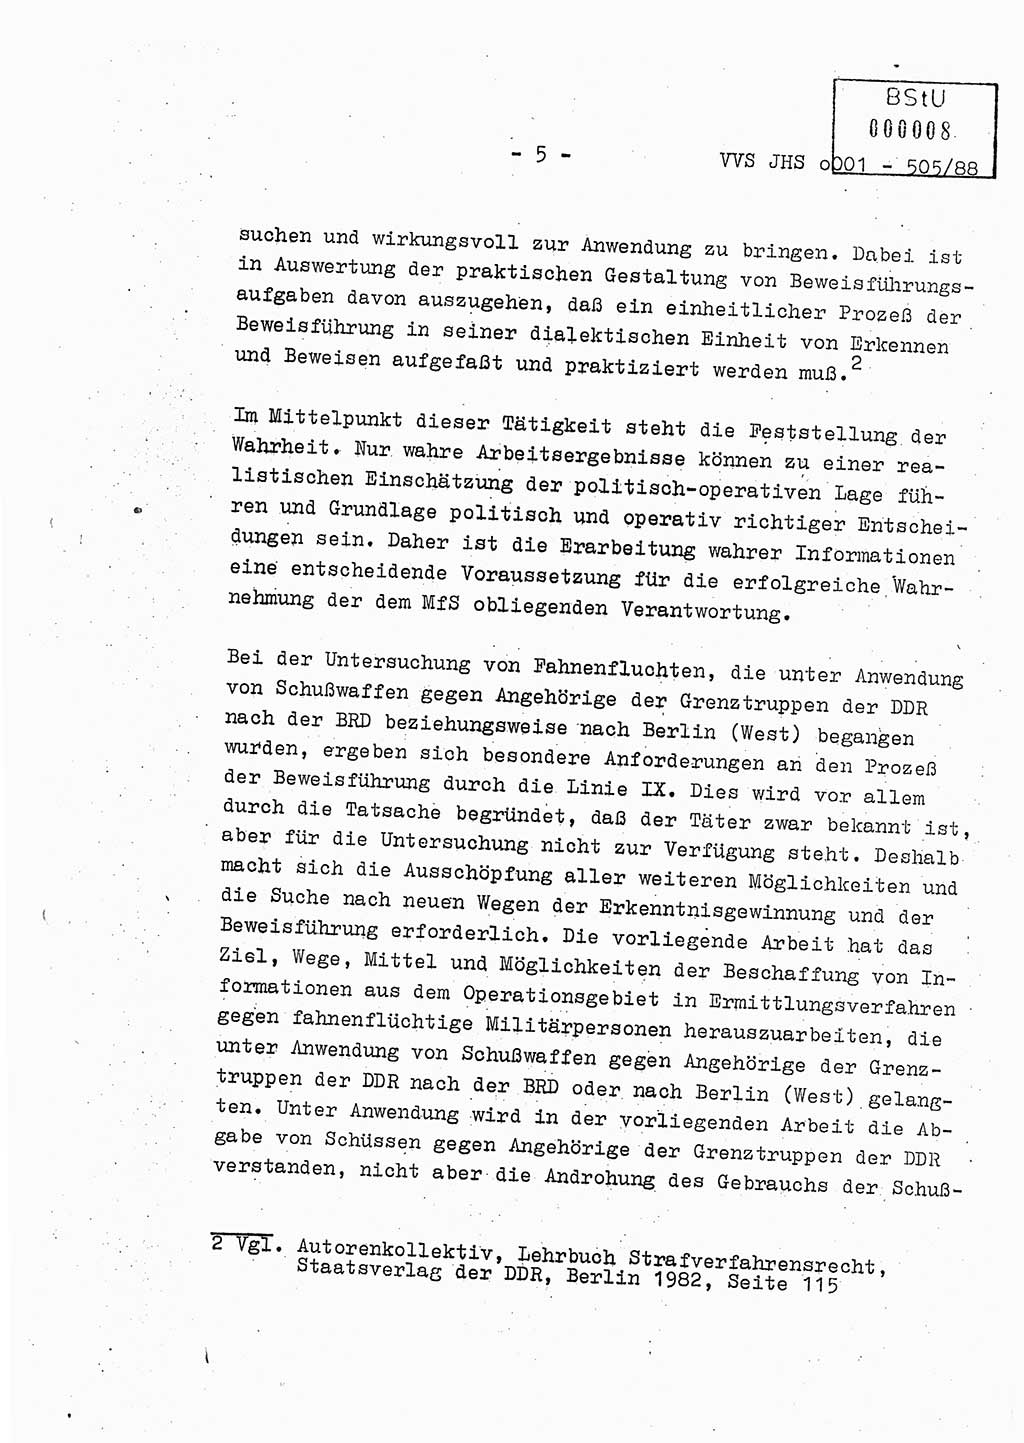 Diplomarbeit Leutnant Frank Schulze (HA Ⅸ/9), Ministerium für Staatssicherheit (MfS) [Deutsche Demokratische Republik (DDR)], Juristische Hochschule (JHS), Vertrauliche Verschlußsache (VVS) o001-505/88, Potsdam 1988, Seite 5 (Dipl.-Arb. MfS DDR JHS VVS o001-505/88 1988, S. 5)